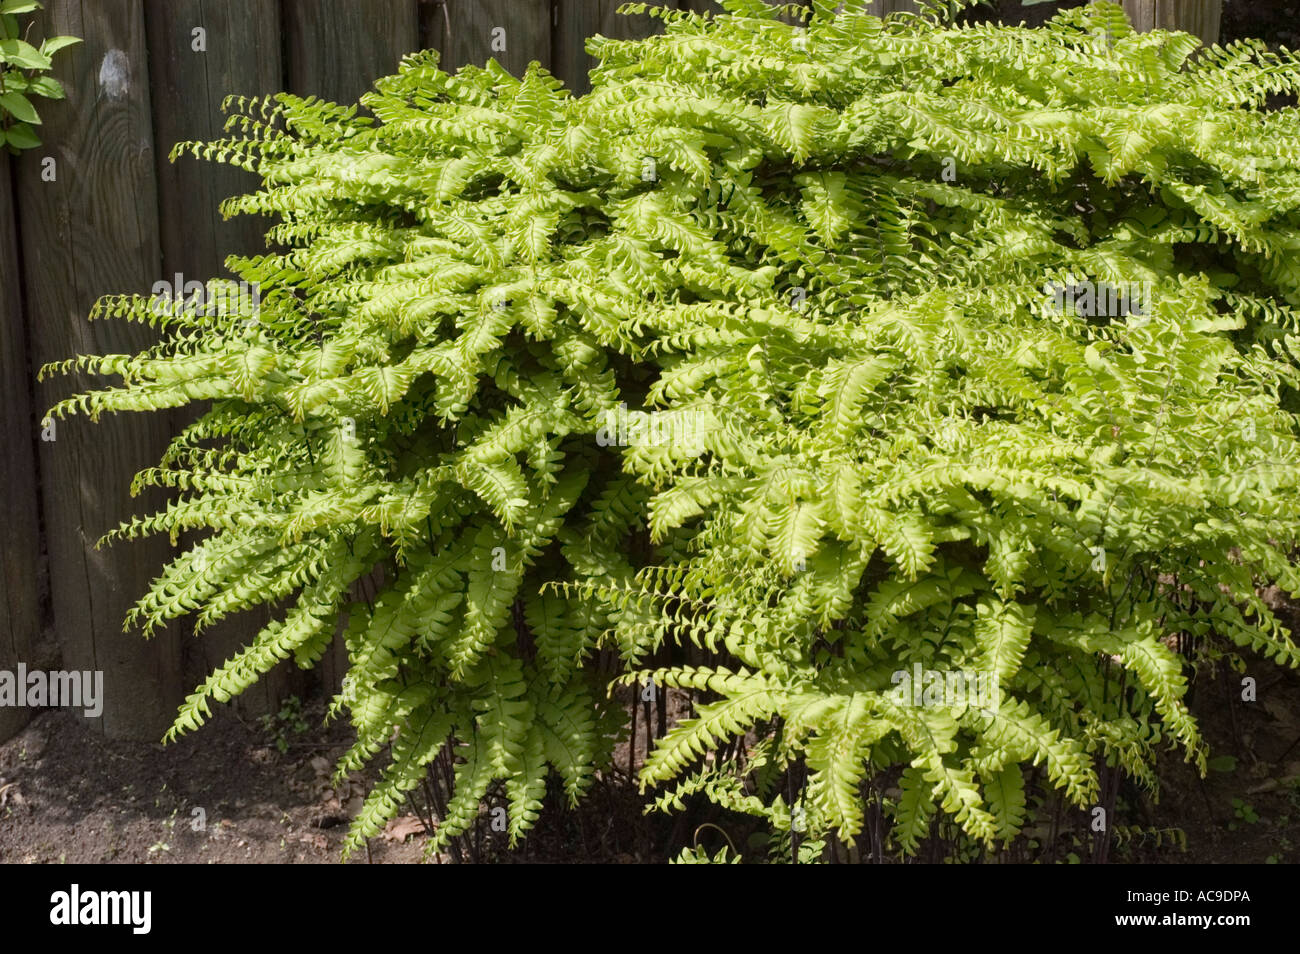 Green leaves of Maidenhair fern Adiantaceae Adiantum pedatum Imbricatum Stock Photo